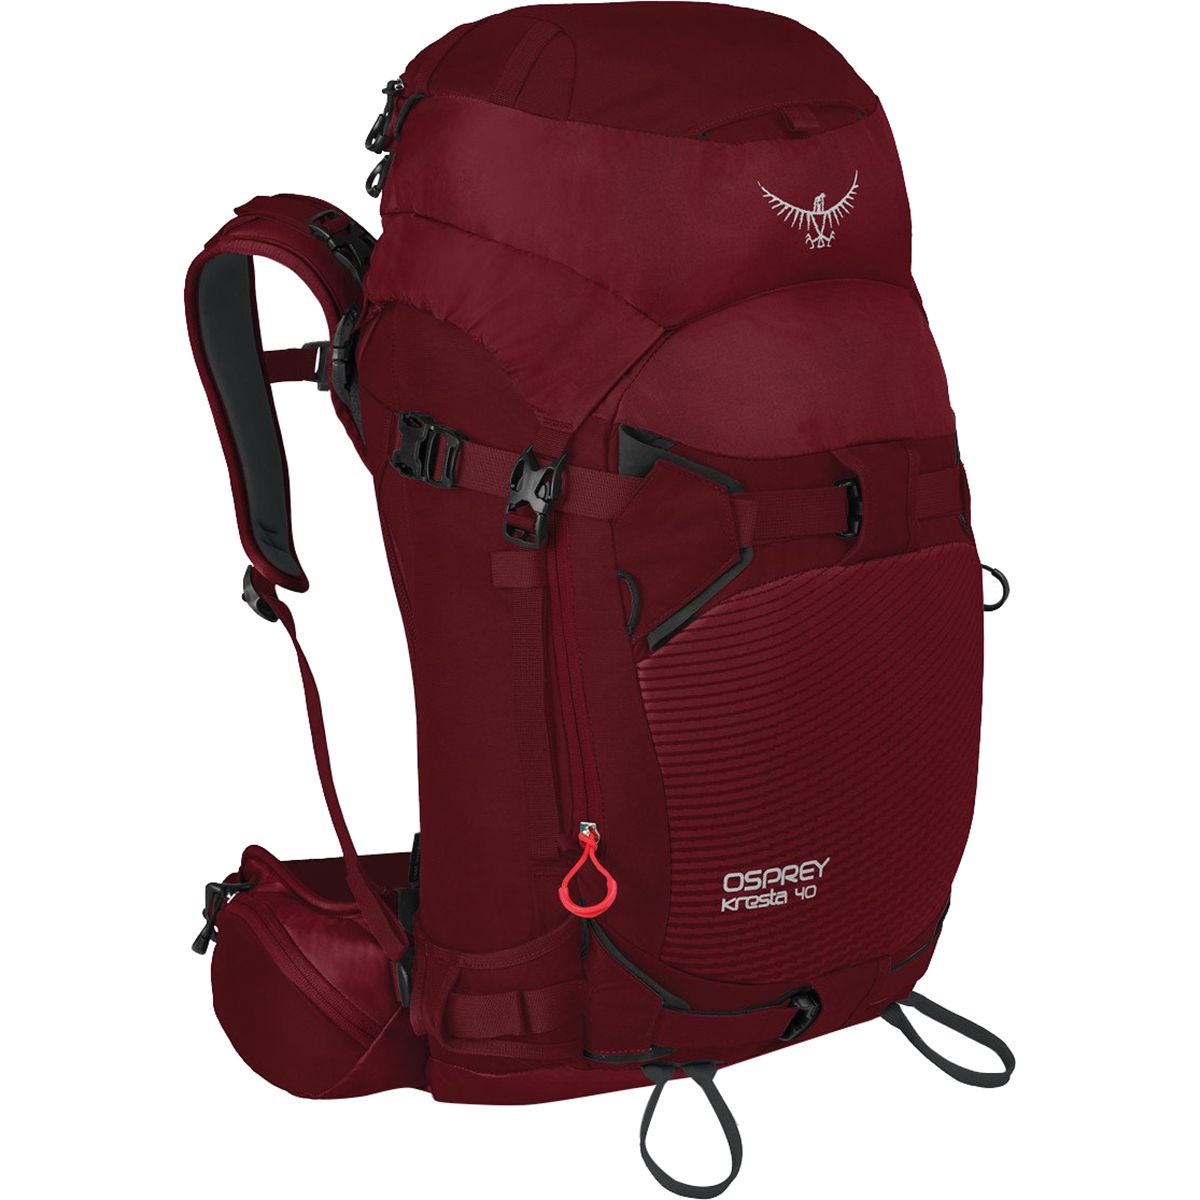 Osprey Packs Kresta 40L Backpack - Women's